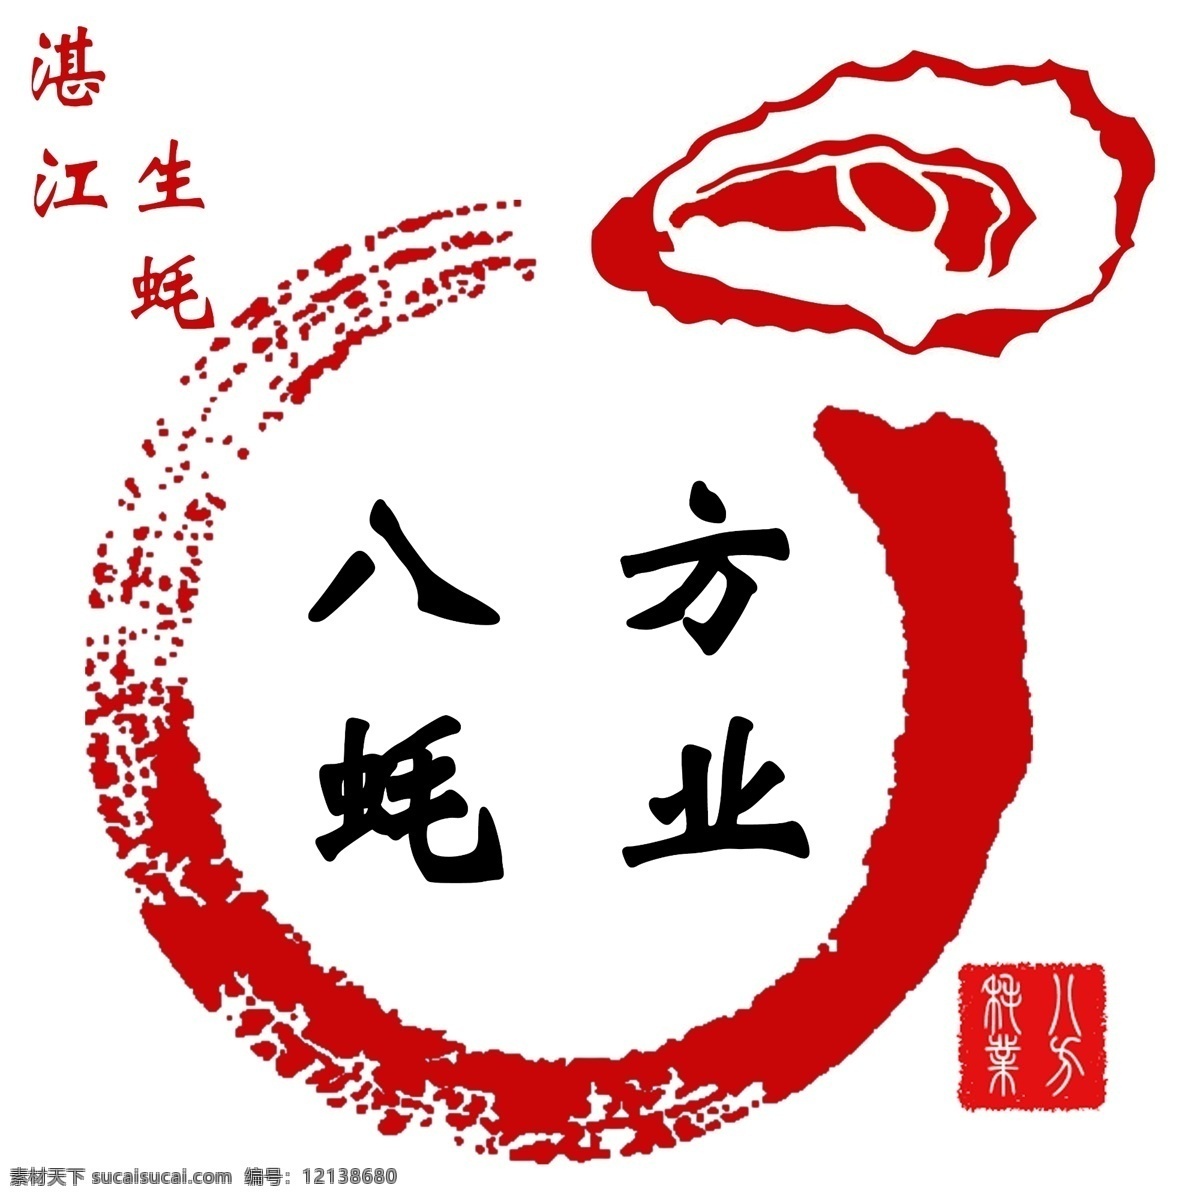 海产品 图标 生 蚝 海产品图标 生蚝 水产品 水墨 中国风 标志图标 其他图标